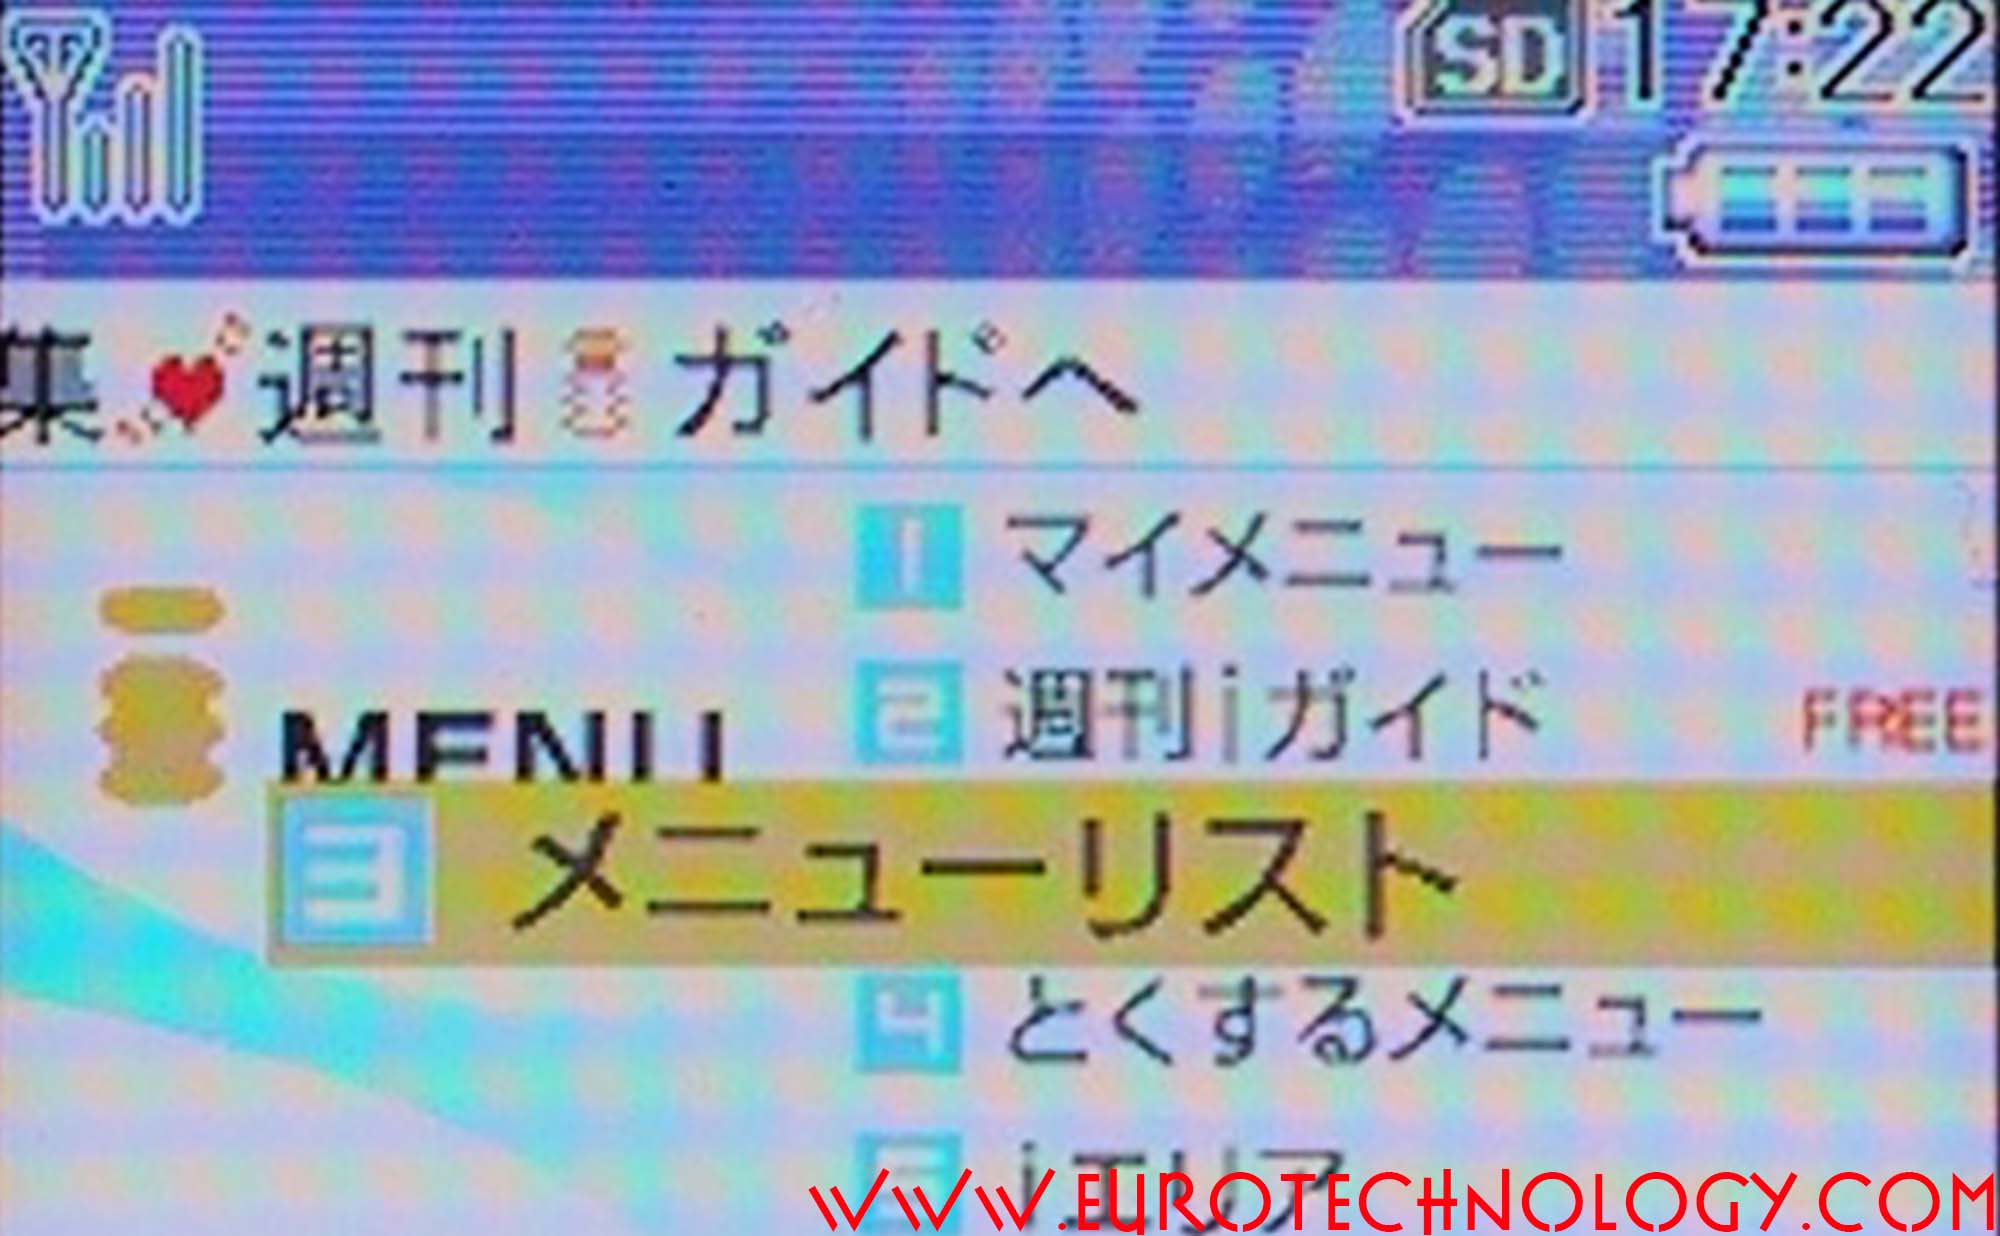 i-mode menu NTT docomo